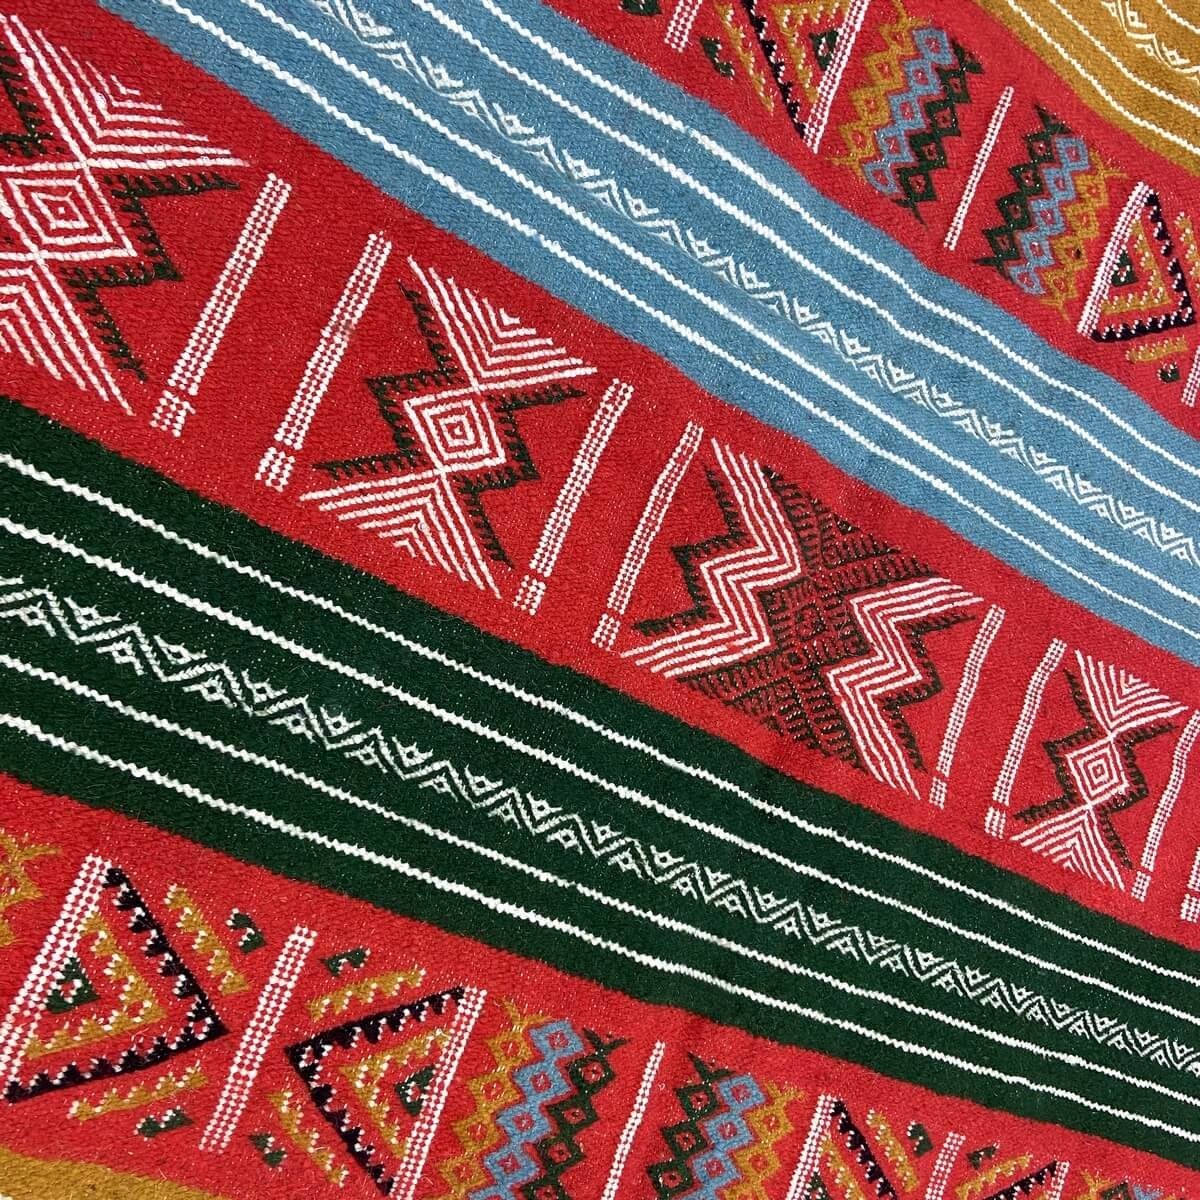 tappeto berbero Tappeto Kilim Dalina 100x150 Multicolore (Fatto a mano, Lana) Tappeto kilim tunisino, in stile marocchino. Tappe